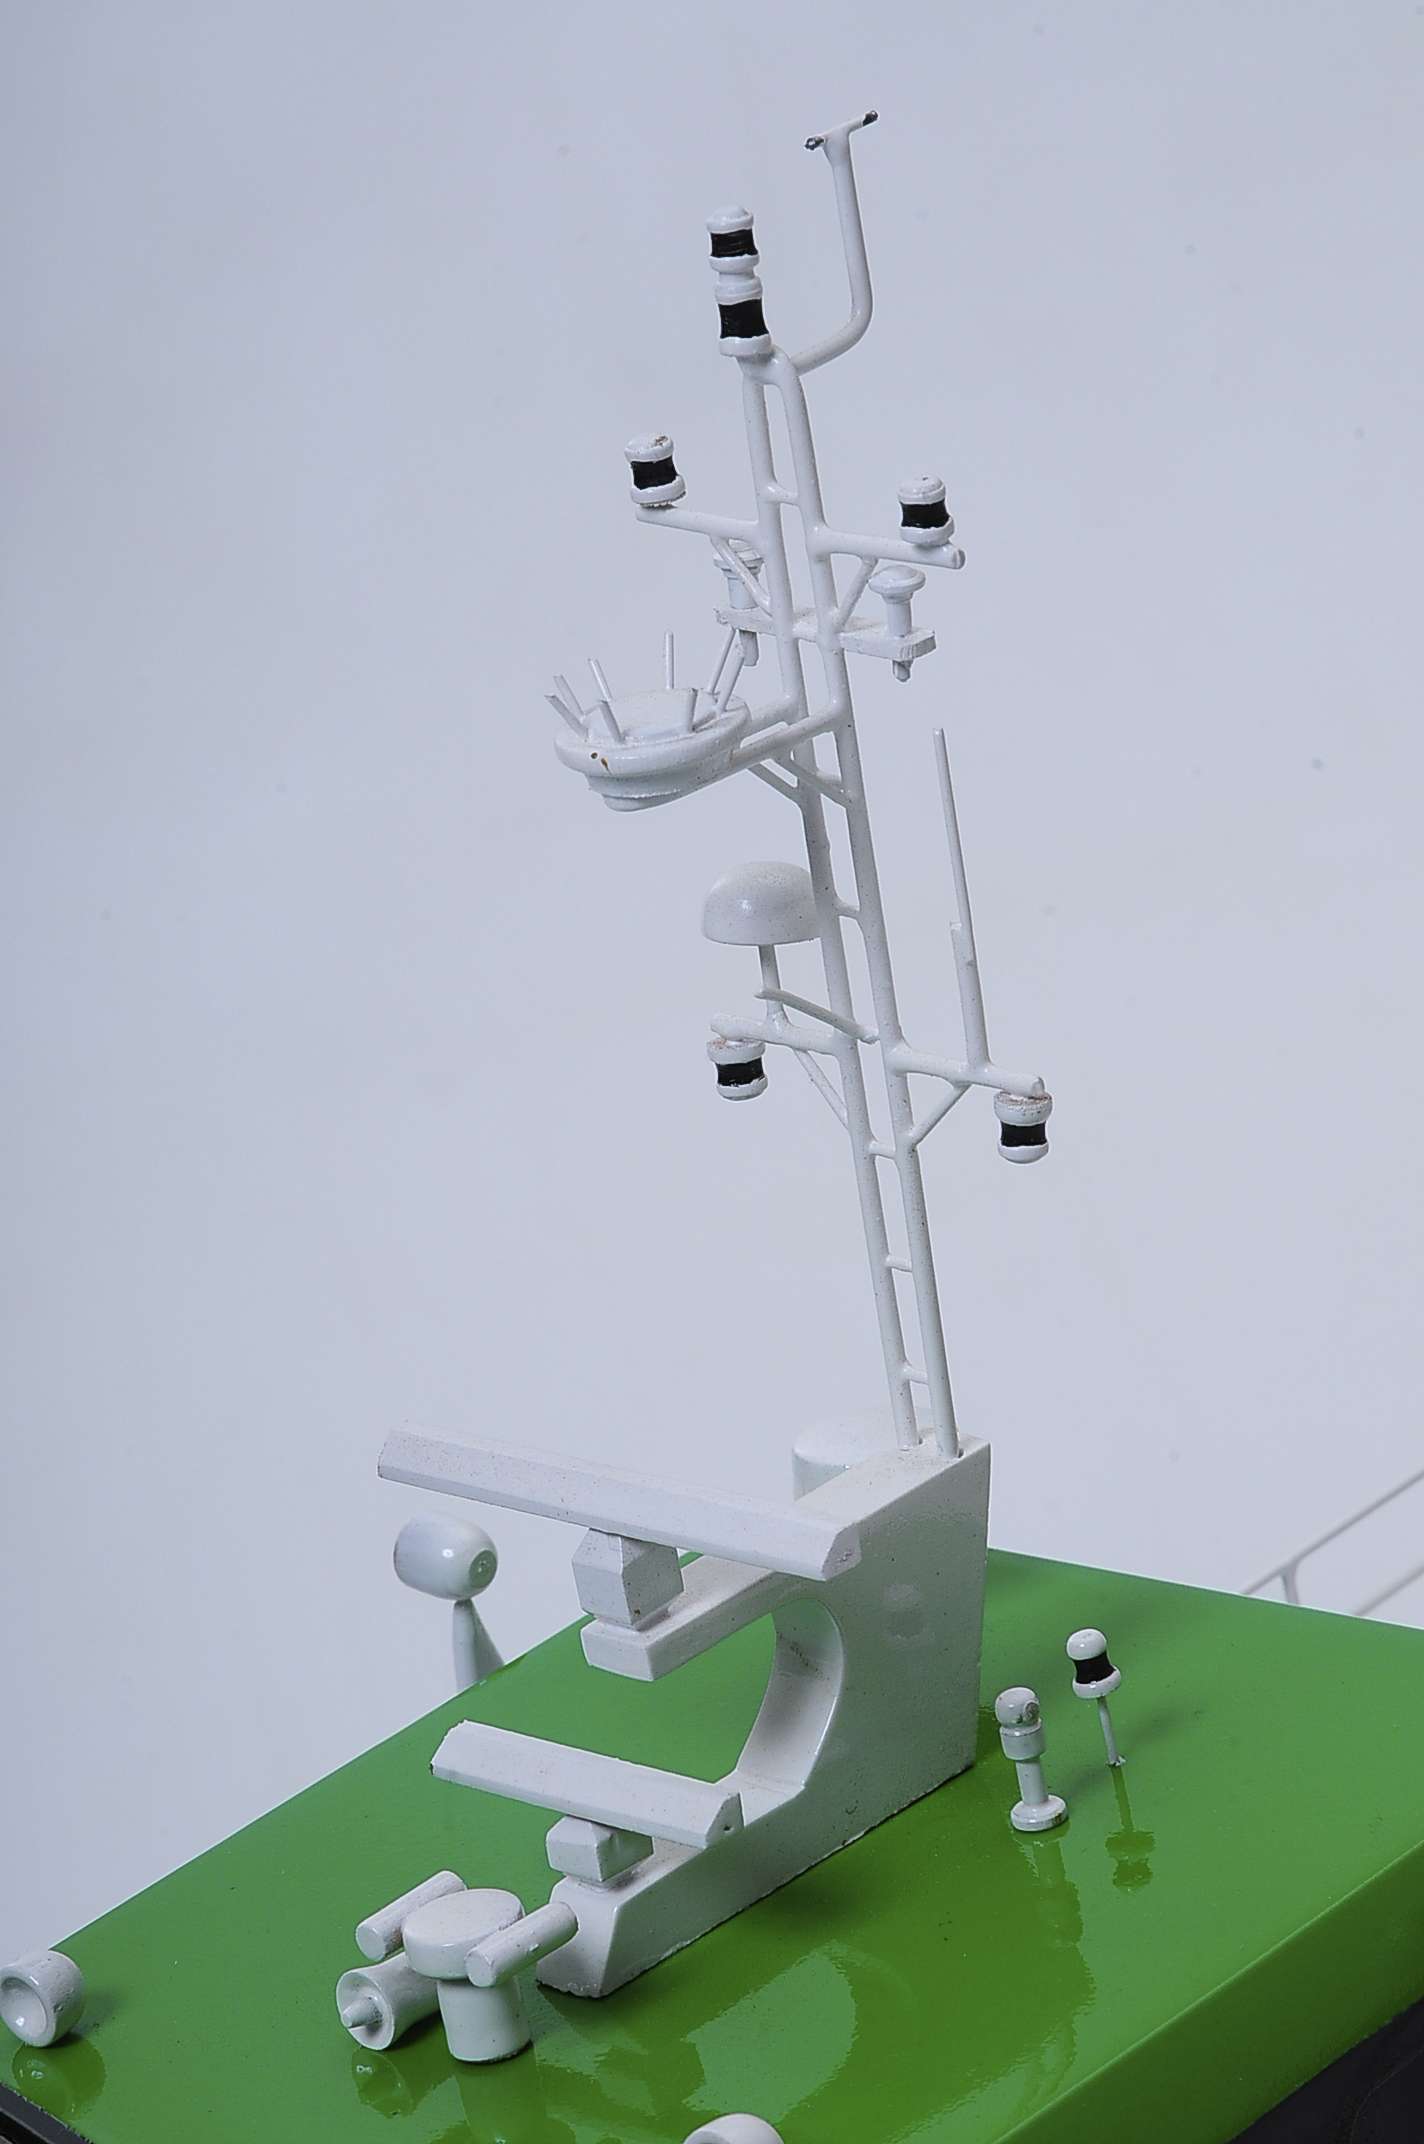 Wind Express 27 (navire de soutien en mer) - Maquette de bateau